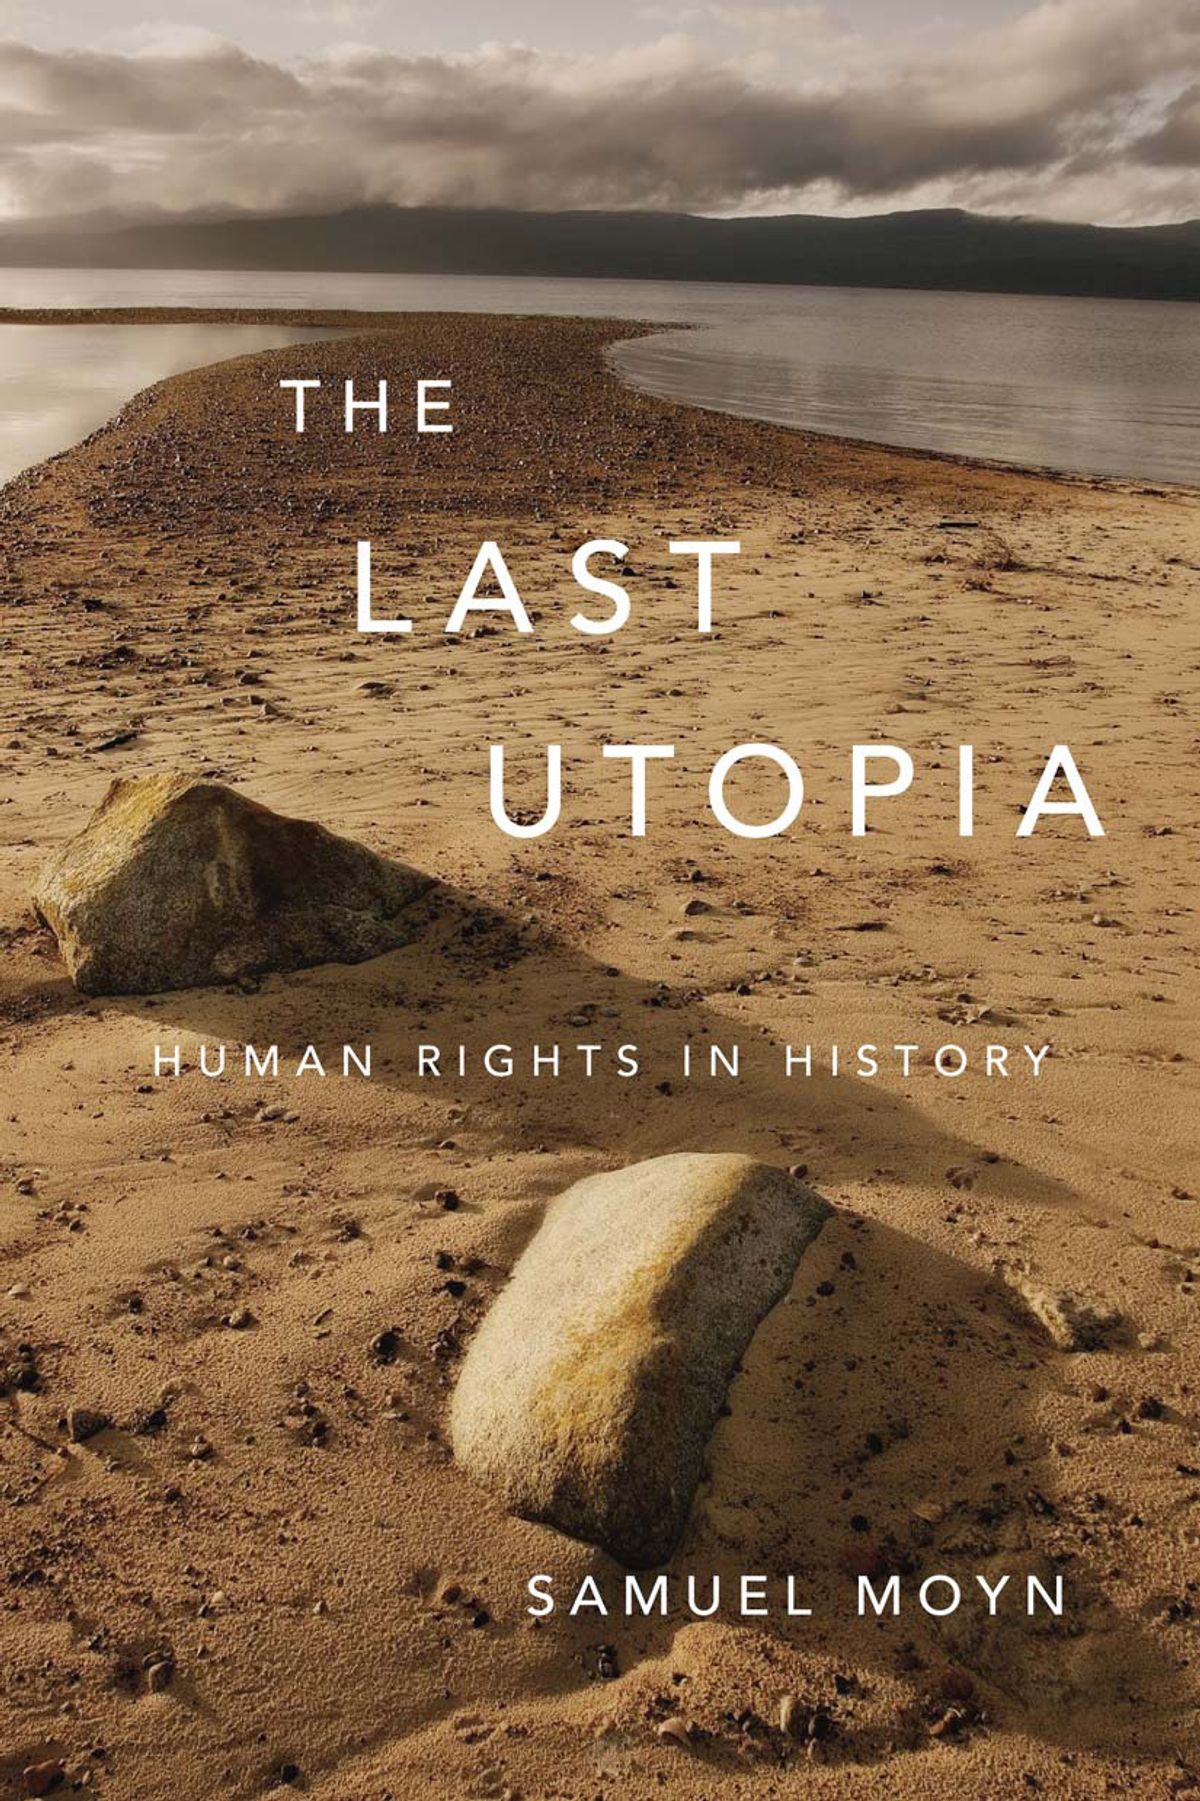 The Last Utopia, by Samuel Moyn (Mjl689)